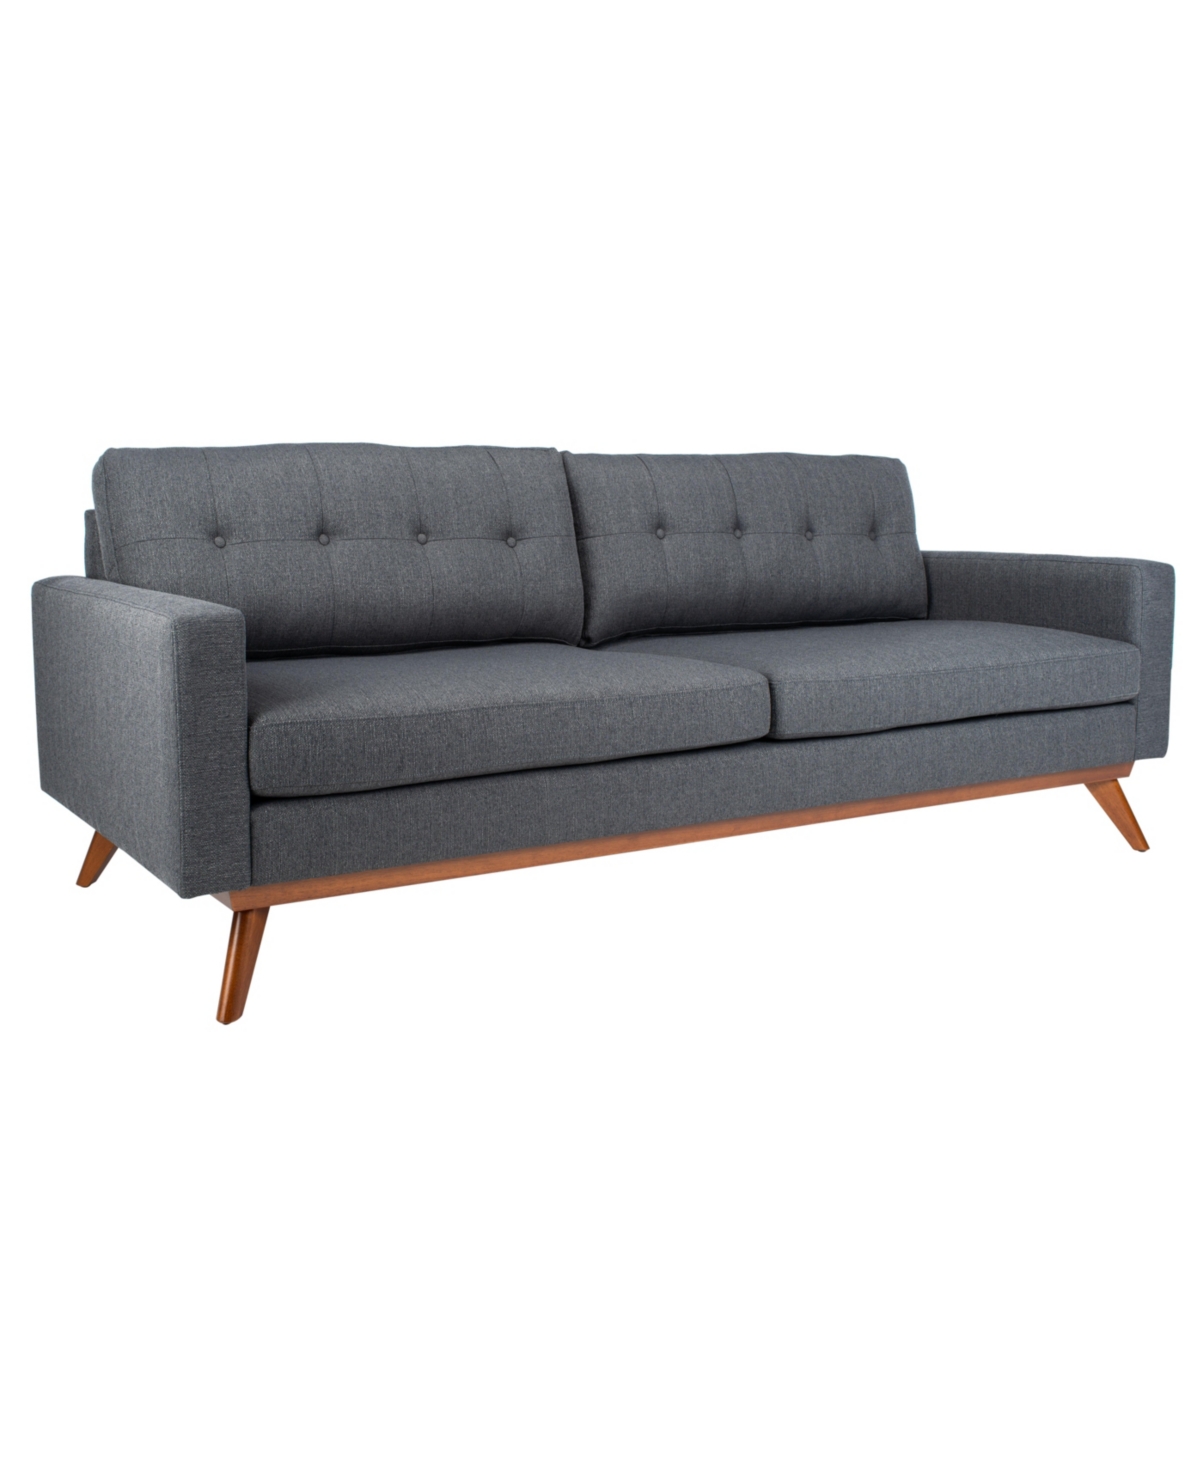 Safavieh Gneiss 85" Modern Linen Sofa In Slate Gray